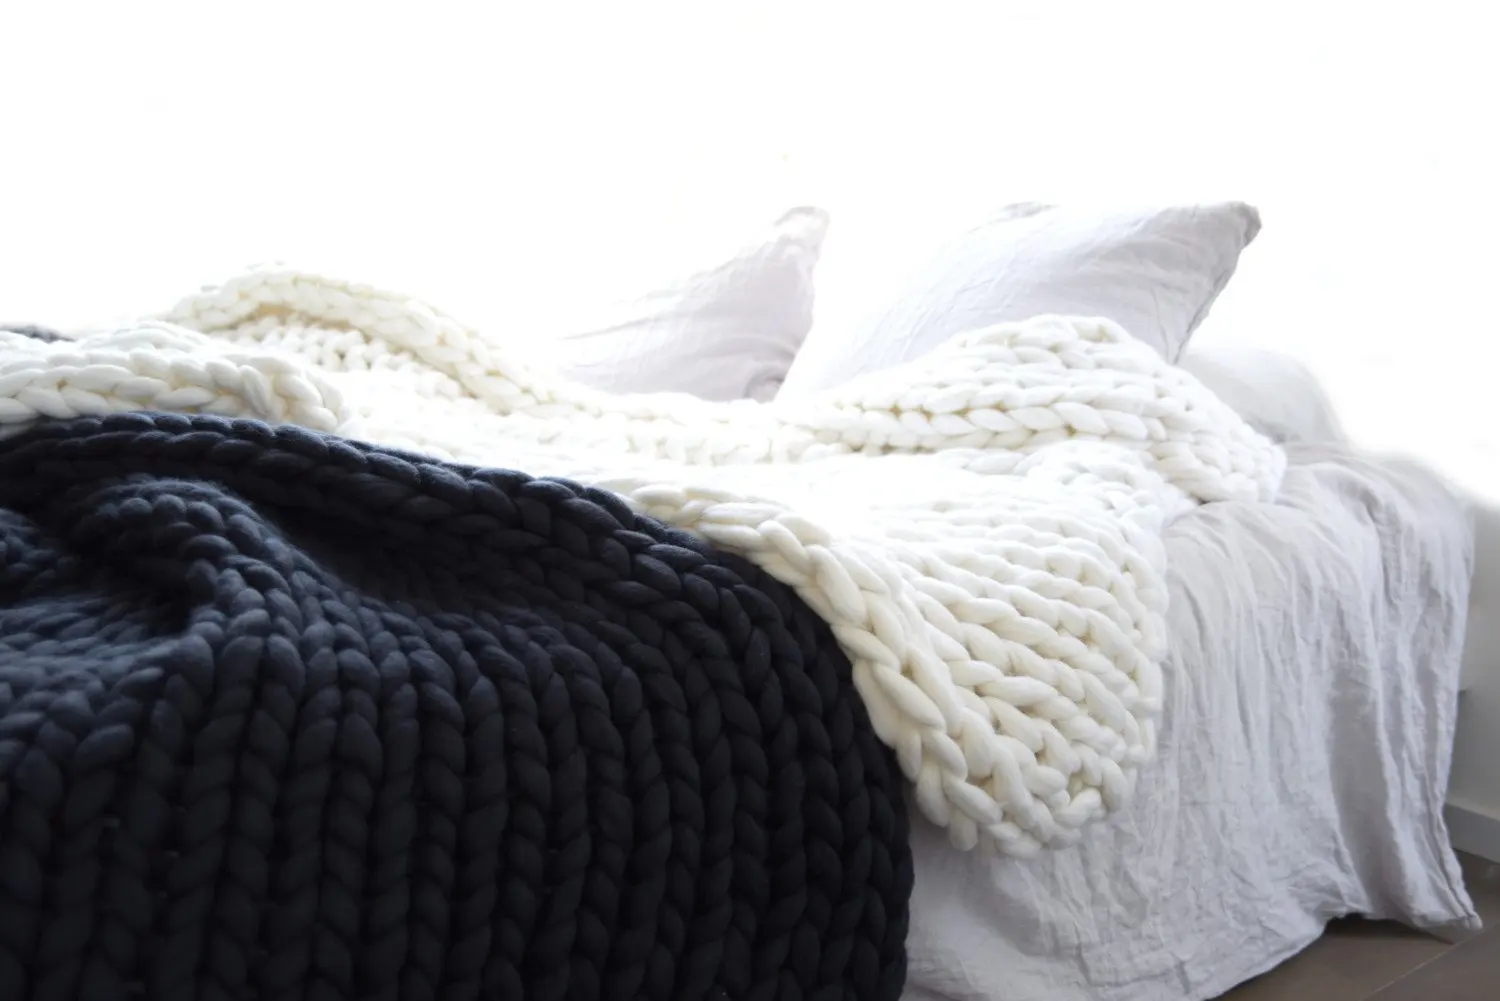 Большое мягкое одеяло крупной ручной вязки Пледы для зимы кровать диван самолет толстая пряжа вязание пледы 16 цветов диван покрывало s - Цвет: black